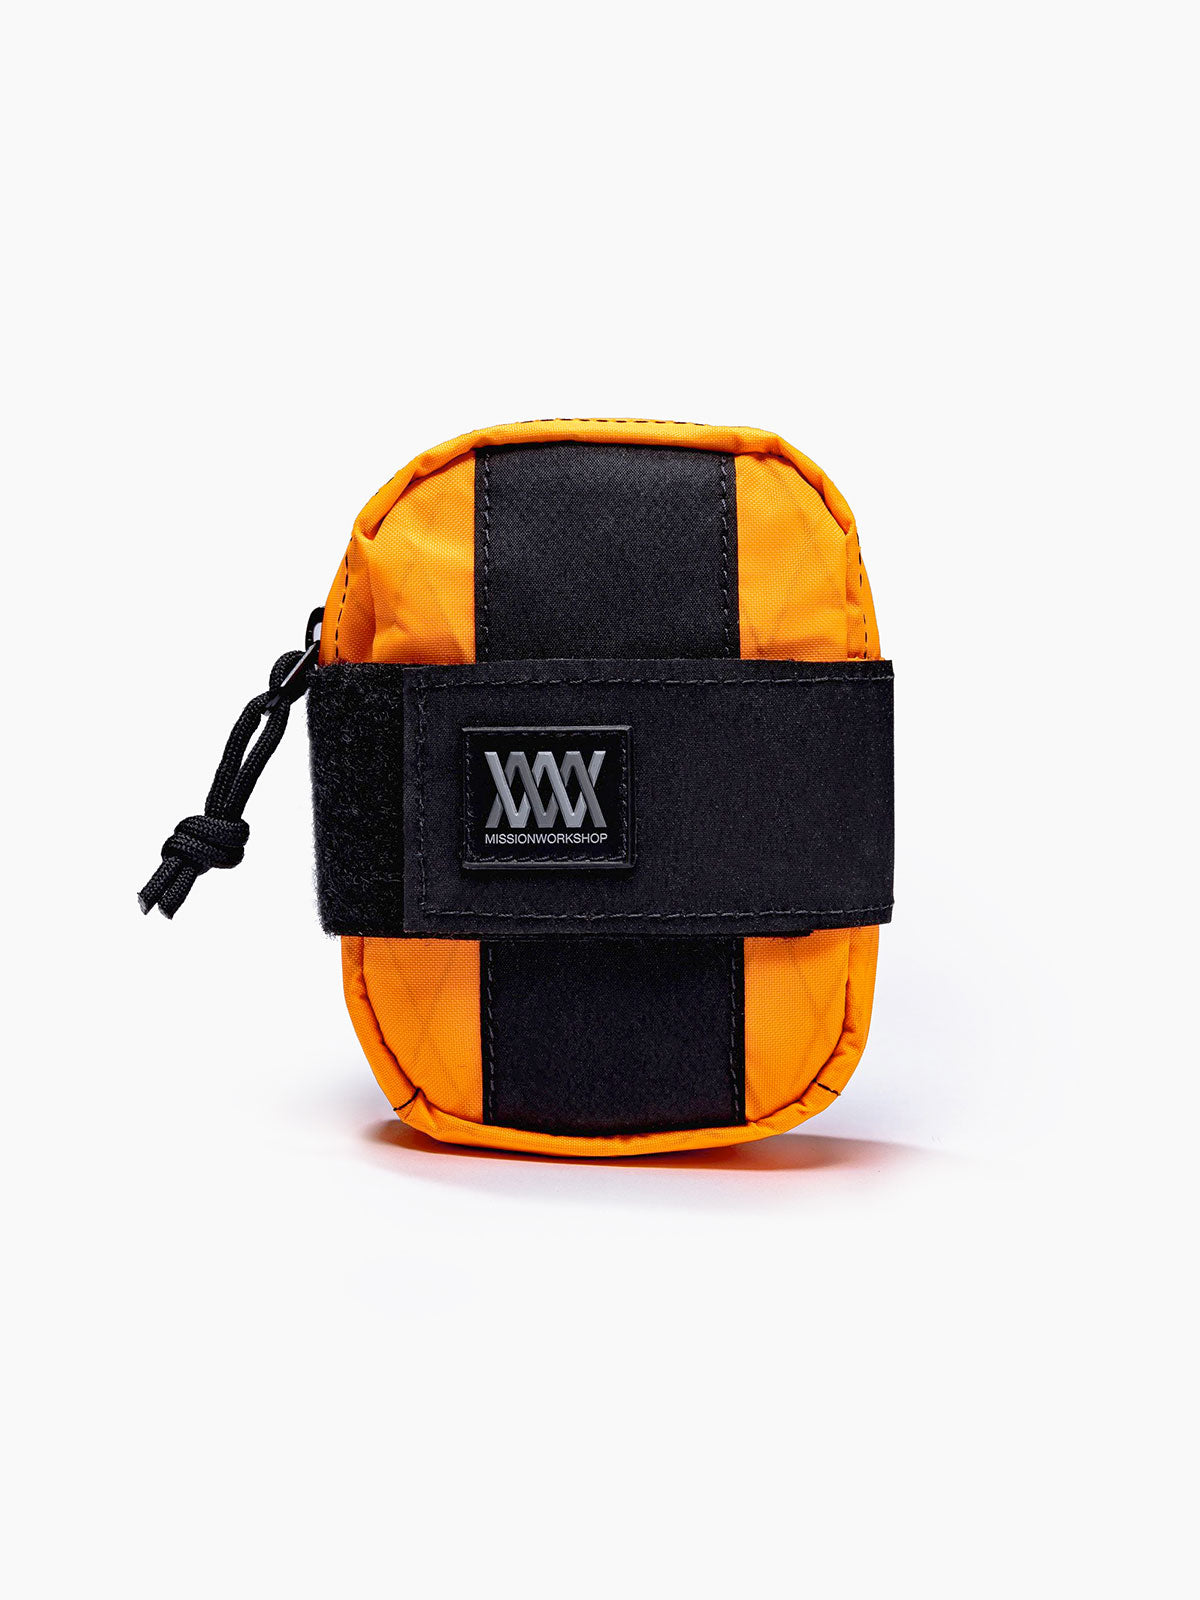 Mission Saddle Bag by Mission Workshop - Weatherproof Bags & Technical Apparel - San Francisco & Los Angeles - Construit pour durer - Garanti pour toujours